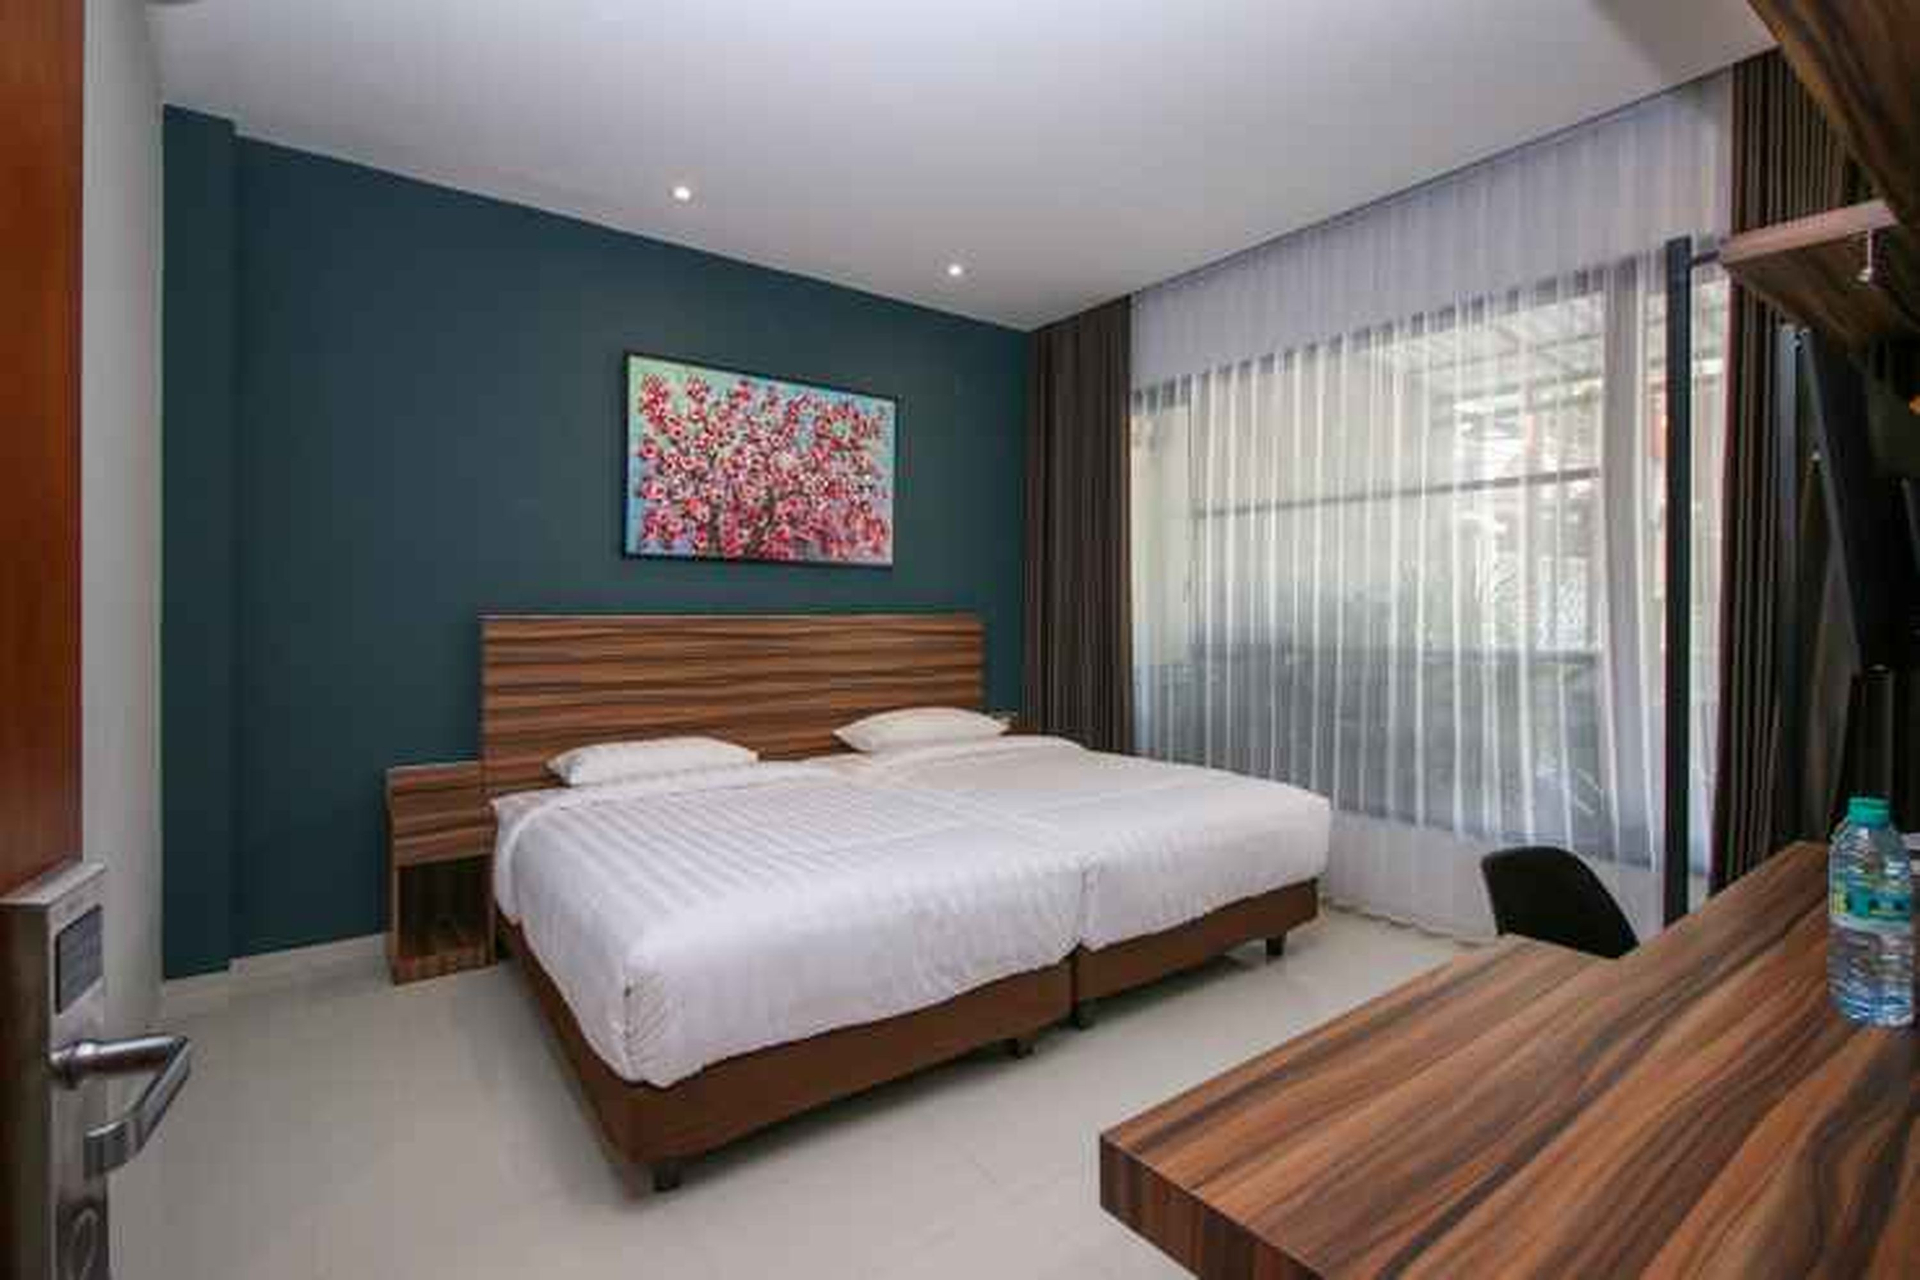 Bedroom 1, Kencana Residence Surabaya, Surabaya